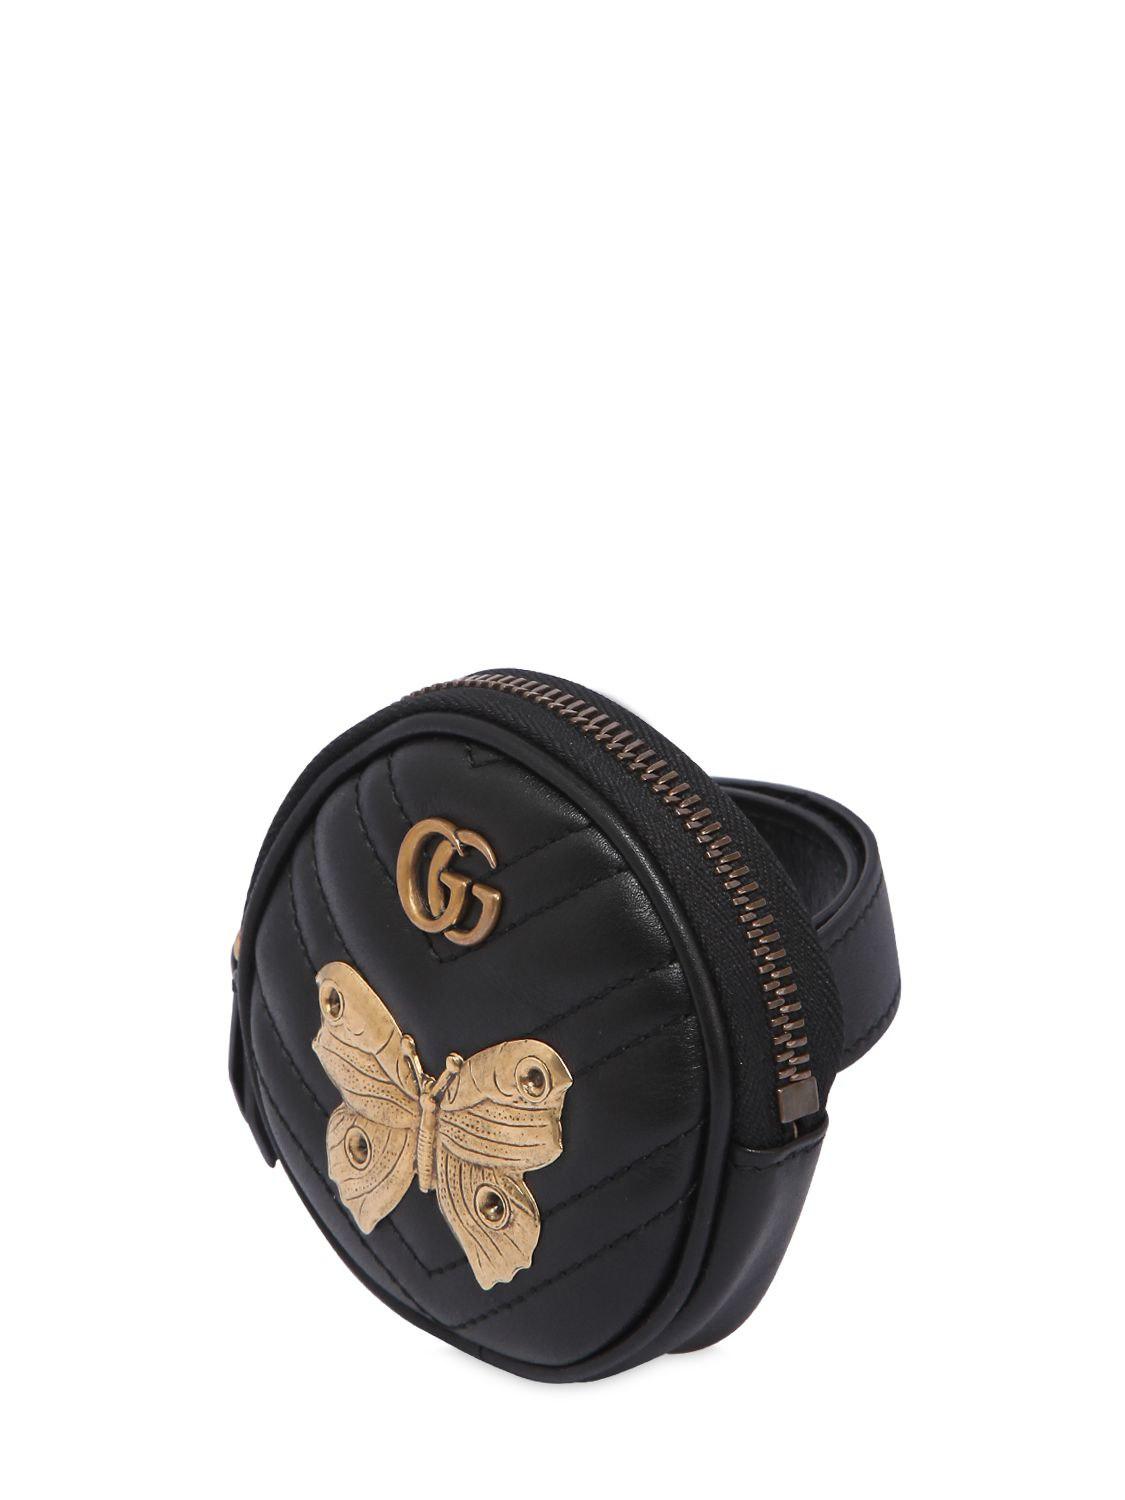 gucci coin purse black